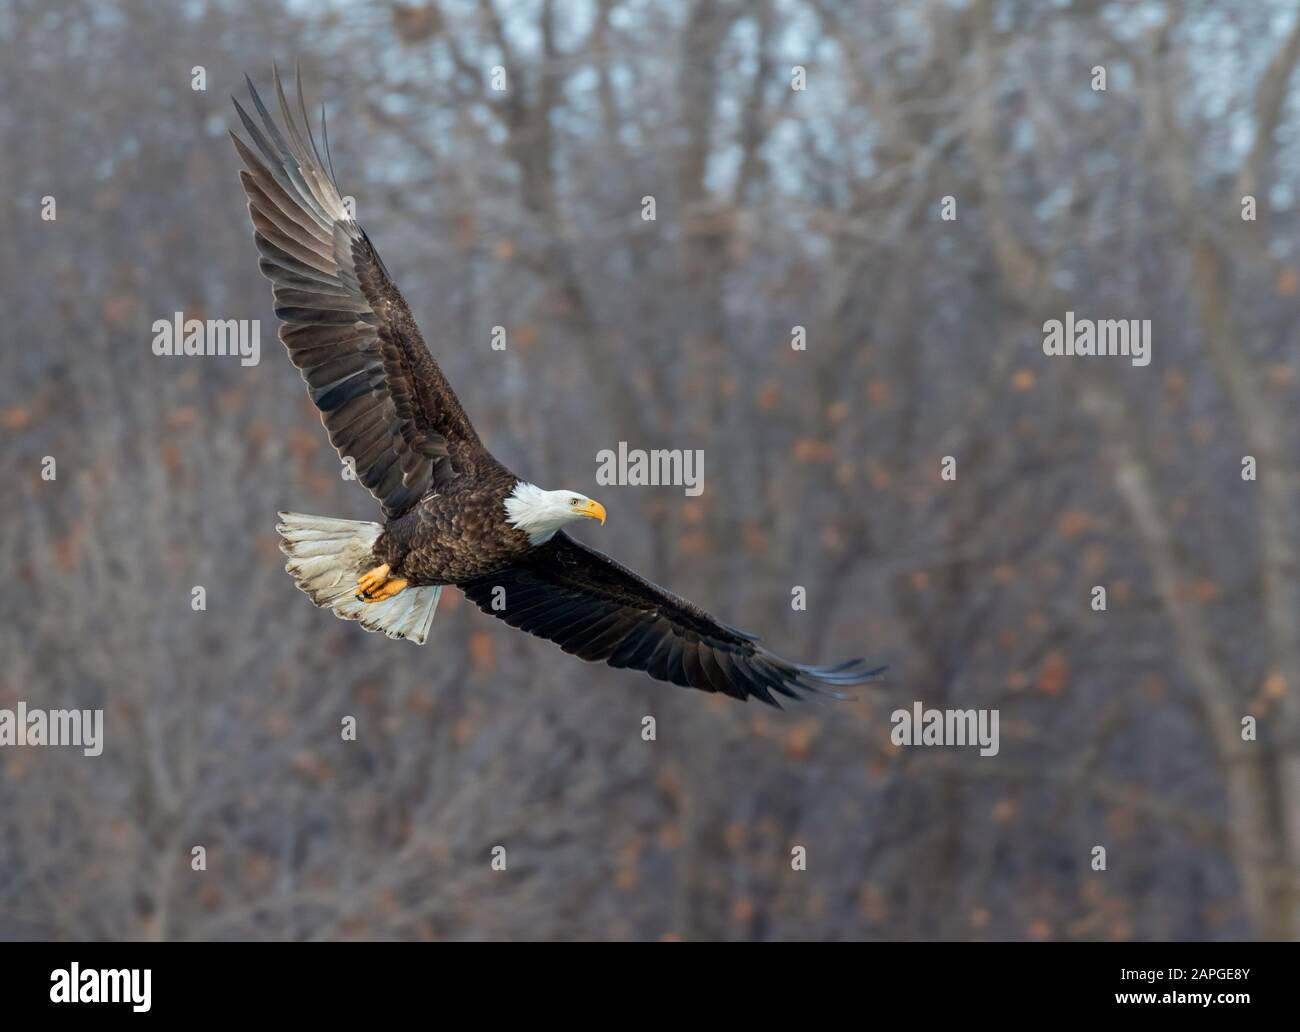 Bald eagle (Haliaetus leucocephalus) adulte volant à travers la forêt d'hiver, Saylorville, Iowa, États-Unis Banque D'Images